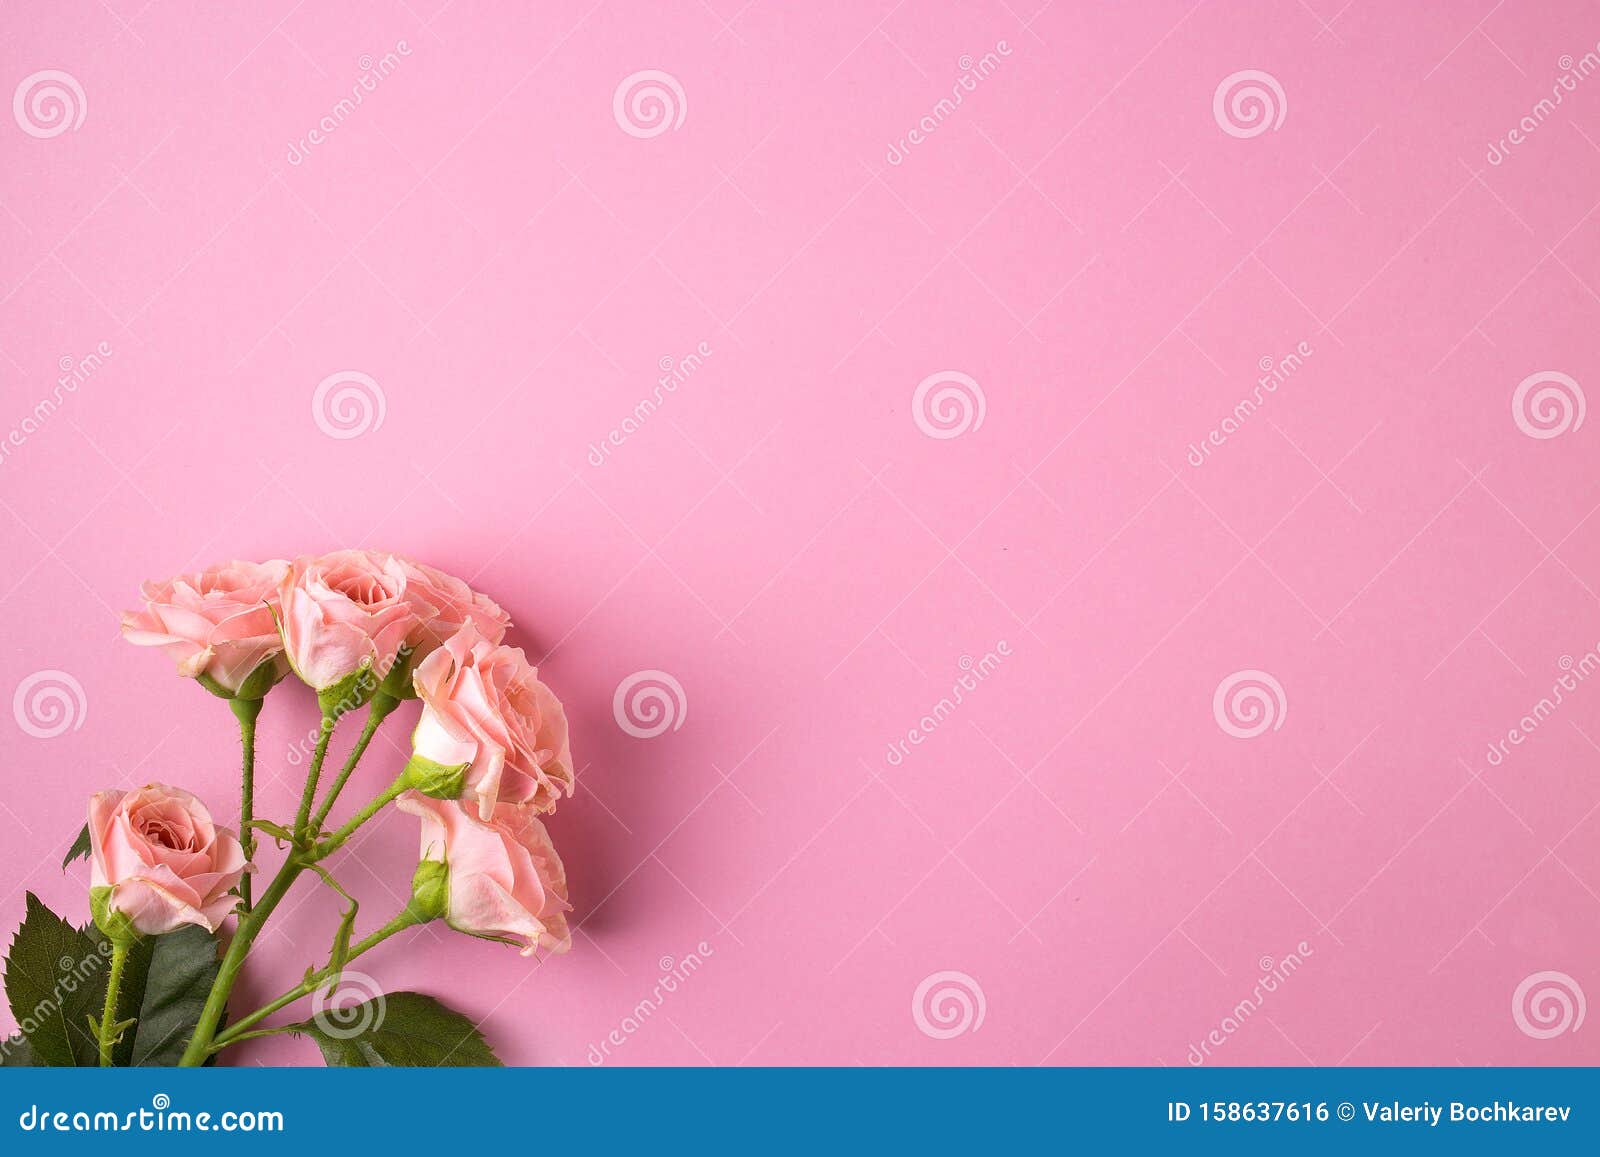 Một bức ảnh tuyệt đẹp của những bông hoa hồng màu hồng nổi bật trên nền pastel hồng nhẹ nhàng sẽ khiến bạn phải trầm trồ và cảm nhận được sự yêu đời. Đừng bỏ lỡ cơ hội này để ngắm nhìn những hình ảnh đầy mê hoặc liên quan đến hoa hồng và pastel hồng.